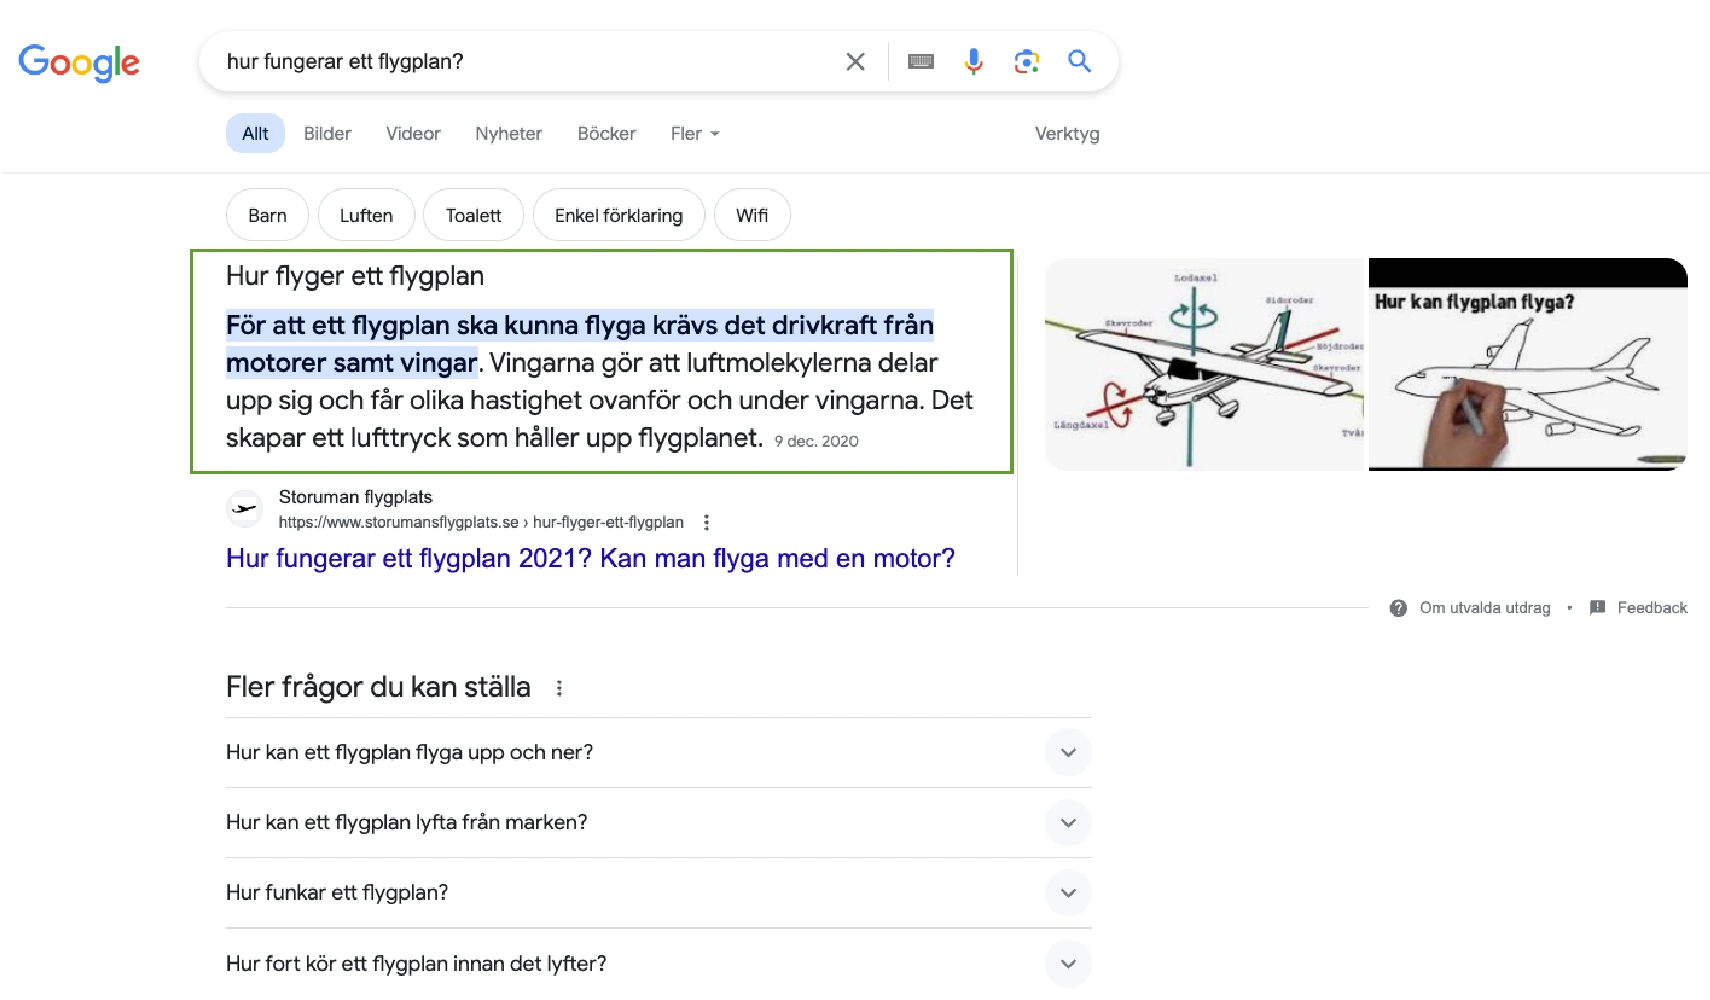 Bild som visar ett textstycke som besvarar användaren sökfråga direkt i sökresultatet. En så kallad Featured snippet eller utvalda utdrag på svenska.